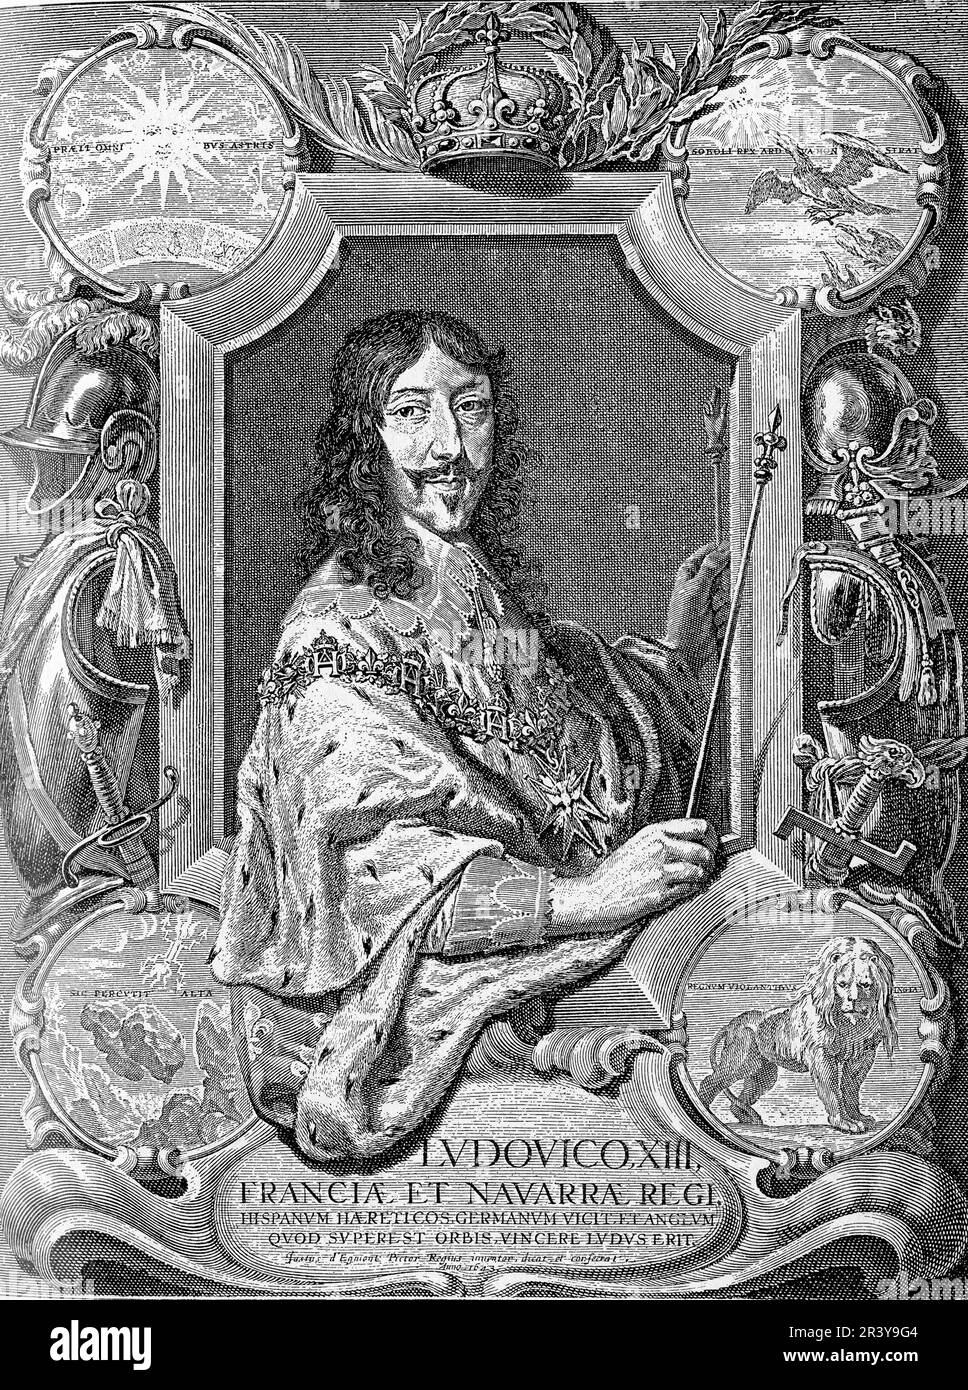 Ludwig XIII. War ein französischer König aus dem 17. Jahrhundert, der von 1610 bis 1643 regierte. Er erbte ein durch religiöse und politische Konflikte zerrissenes Königreich und kämpfte um seine Autorität. Man erinnert sich an ihn für seine Schirmherrschaft der Künste, seine Beiträge zur Entwicklung der französischen Marine und seine Allianz mit Richelieu. Seine Herrschaft war auch von erheblichen Unruhen und Rebellion geprägt Stockfoto